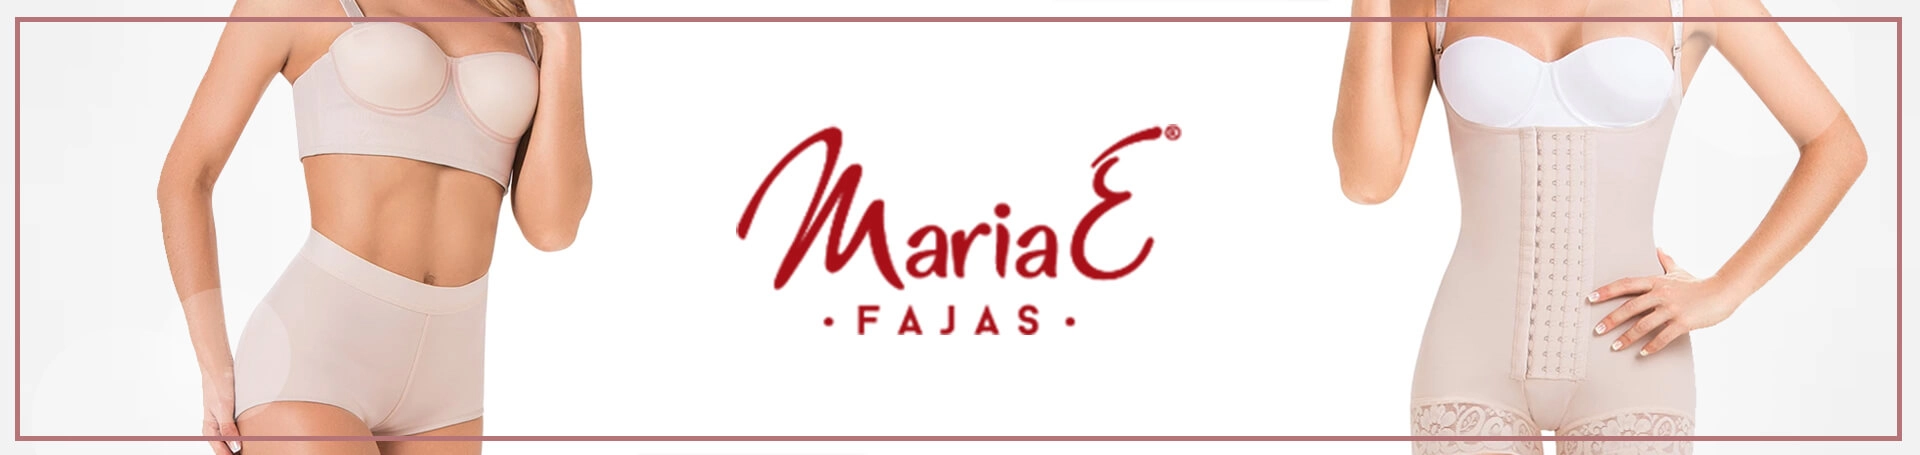 MariaE Fajas 9143